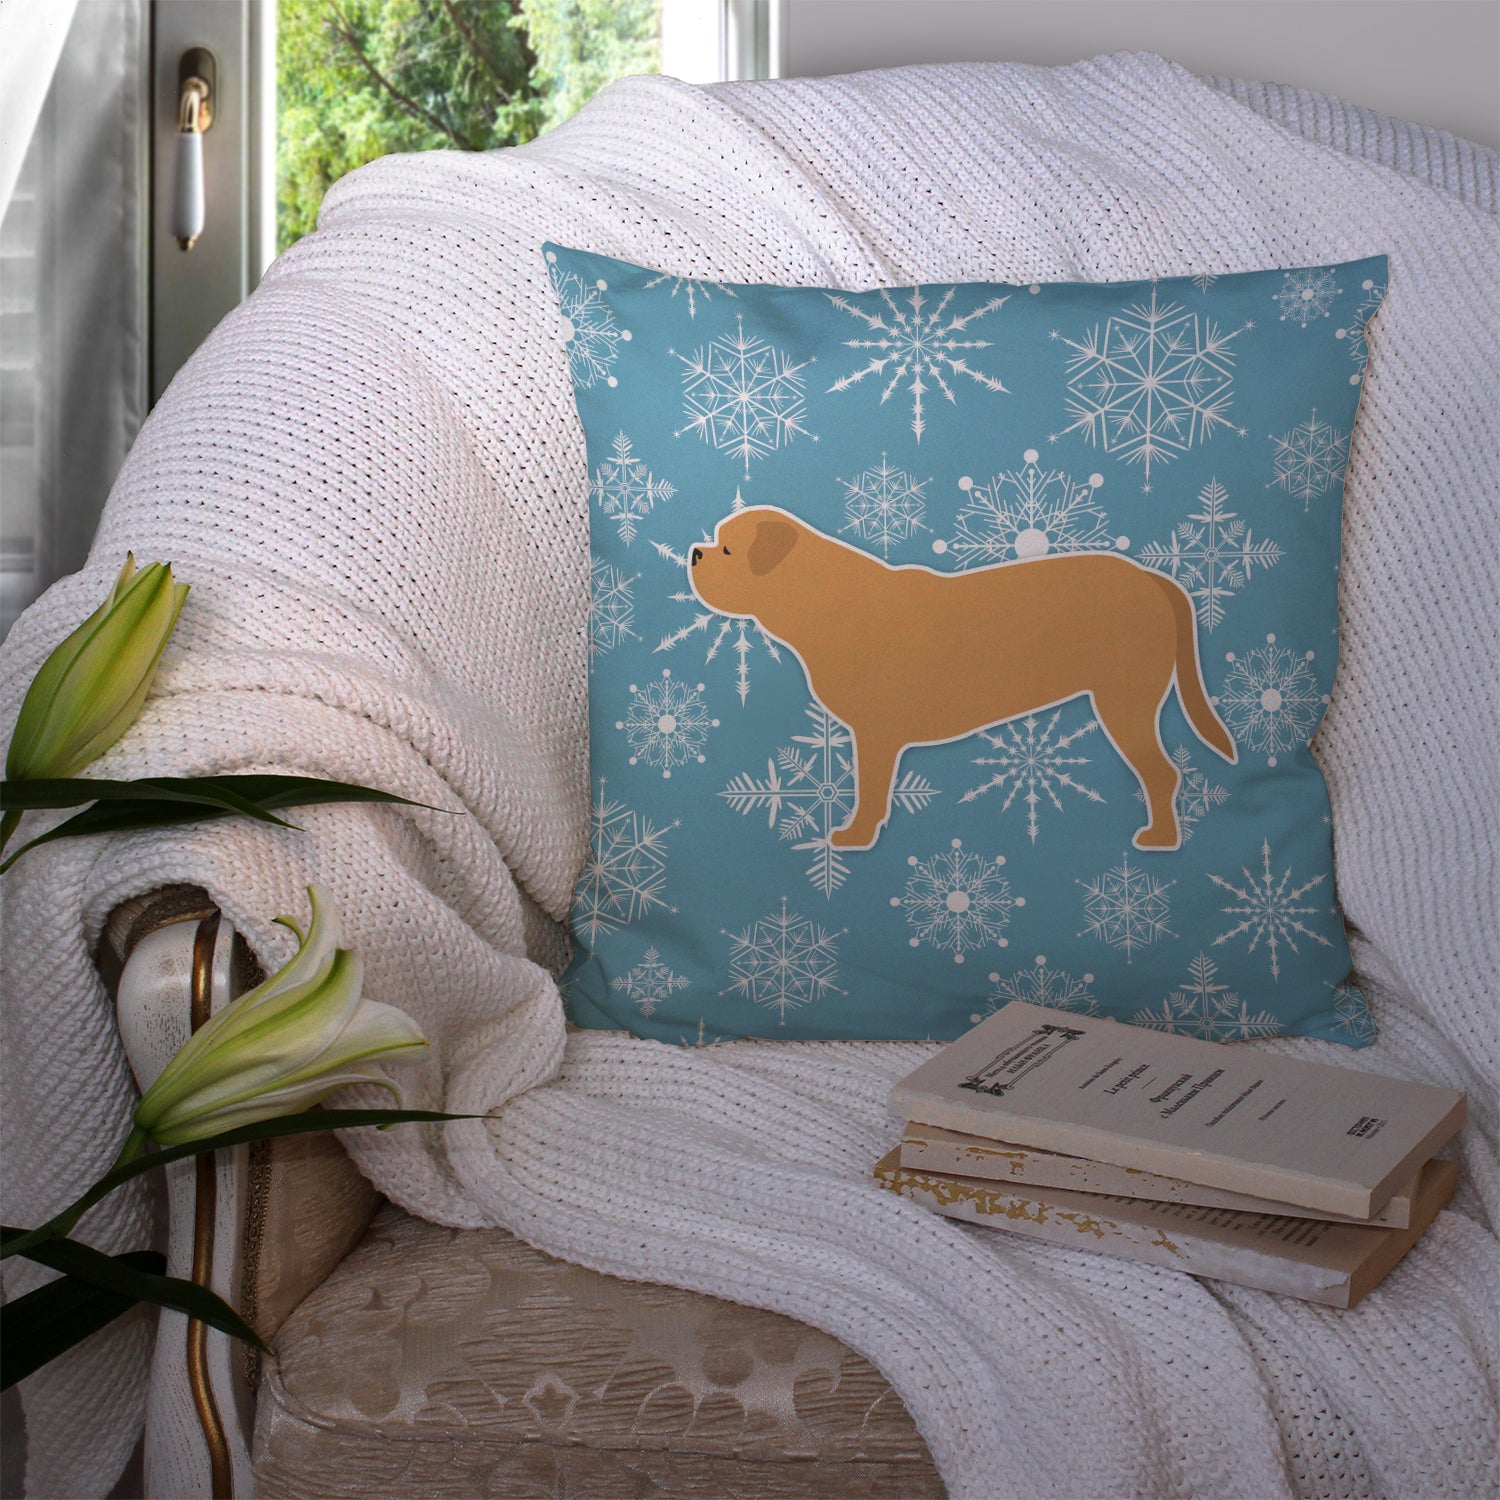 Winter Snowflake Dogue de Bordeaux Fabric Decorative Pillow BB3570PW1414 - the-store.com